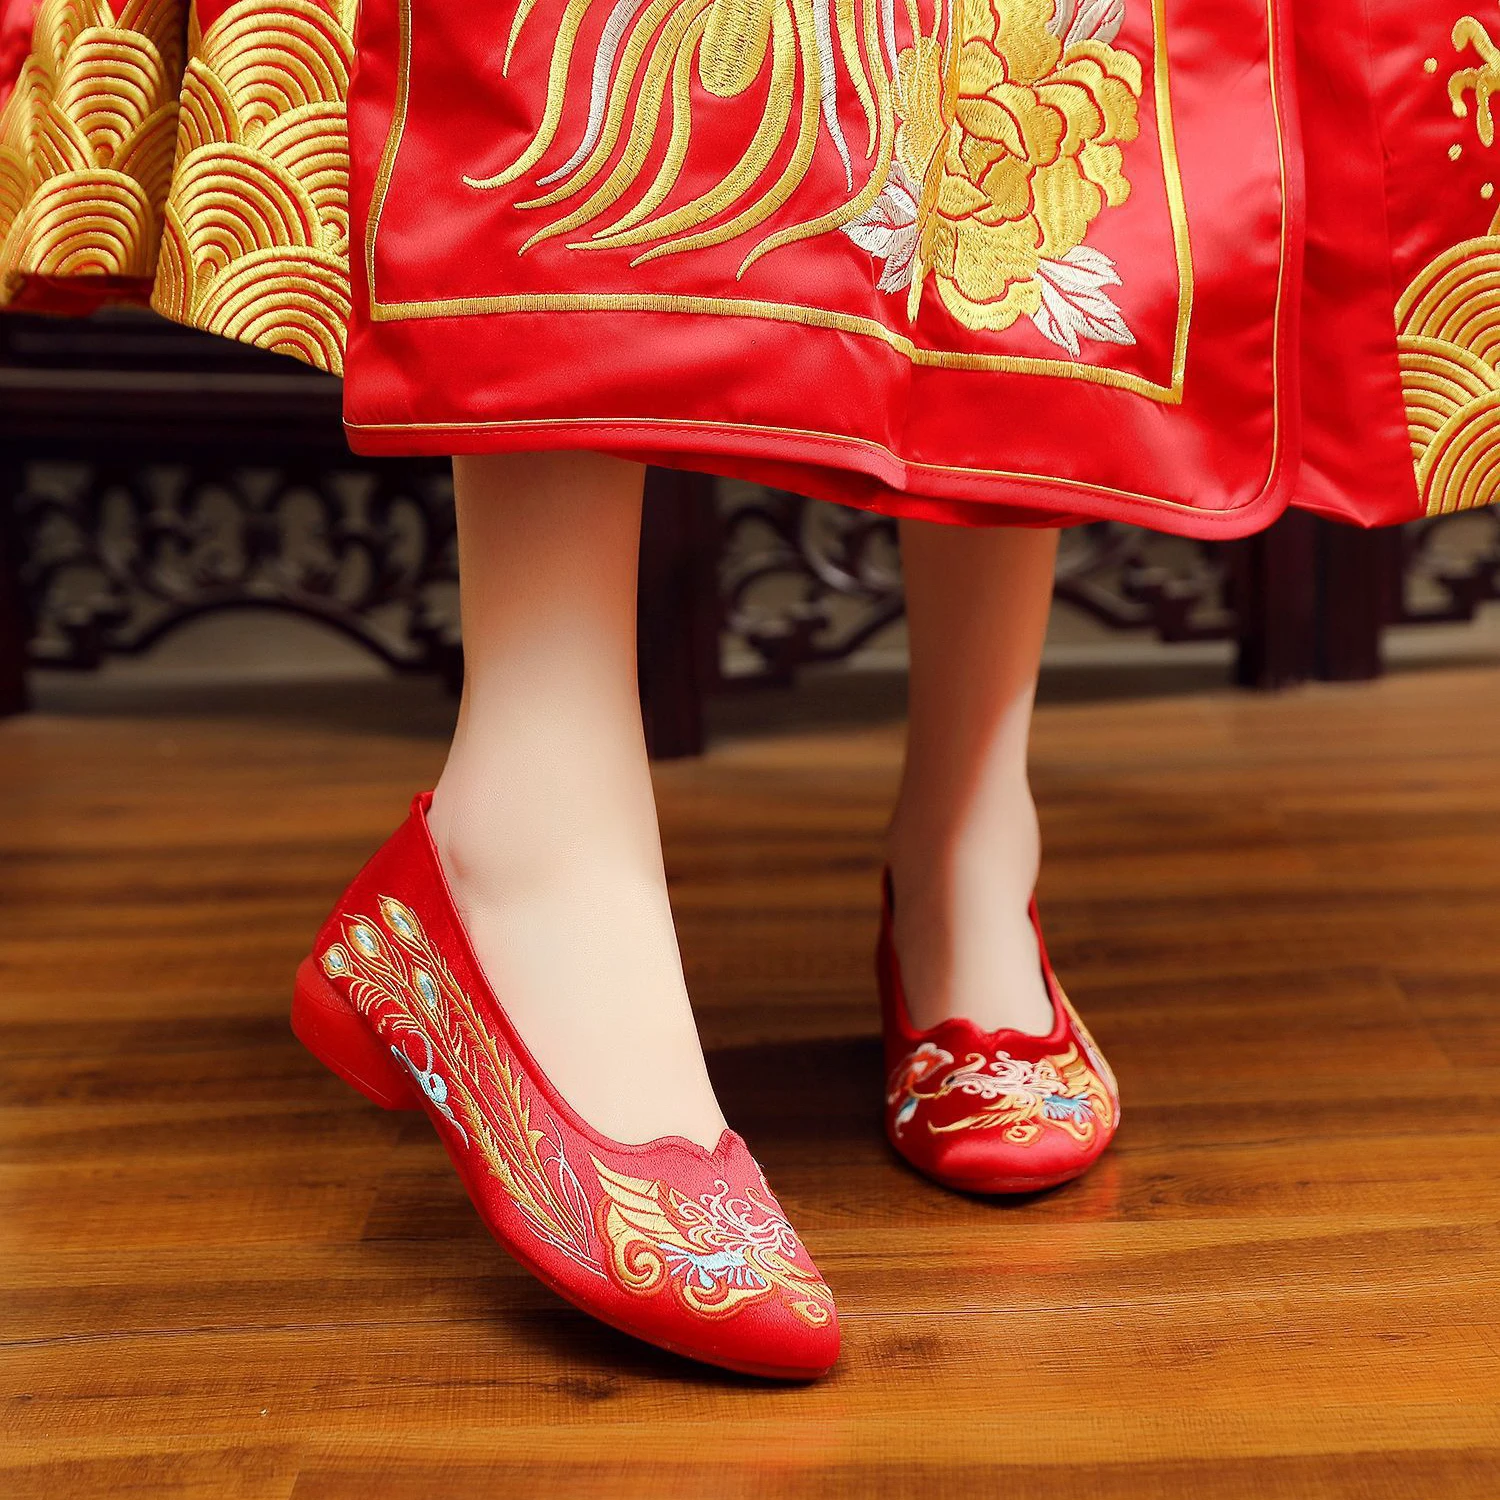 Традиционная китайская обувь женская. Корейская традиционная обувь. Китайская женская традиционная обувь свадьба. Китайские сапоги.